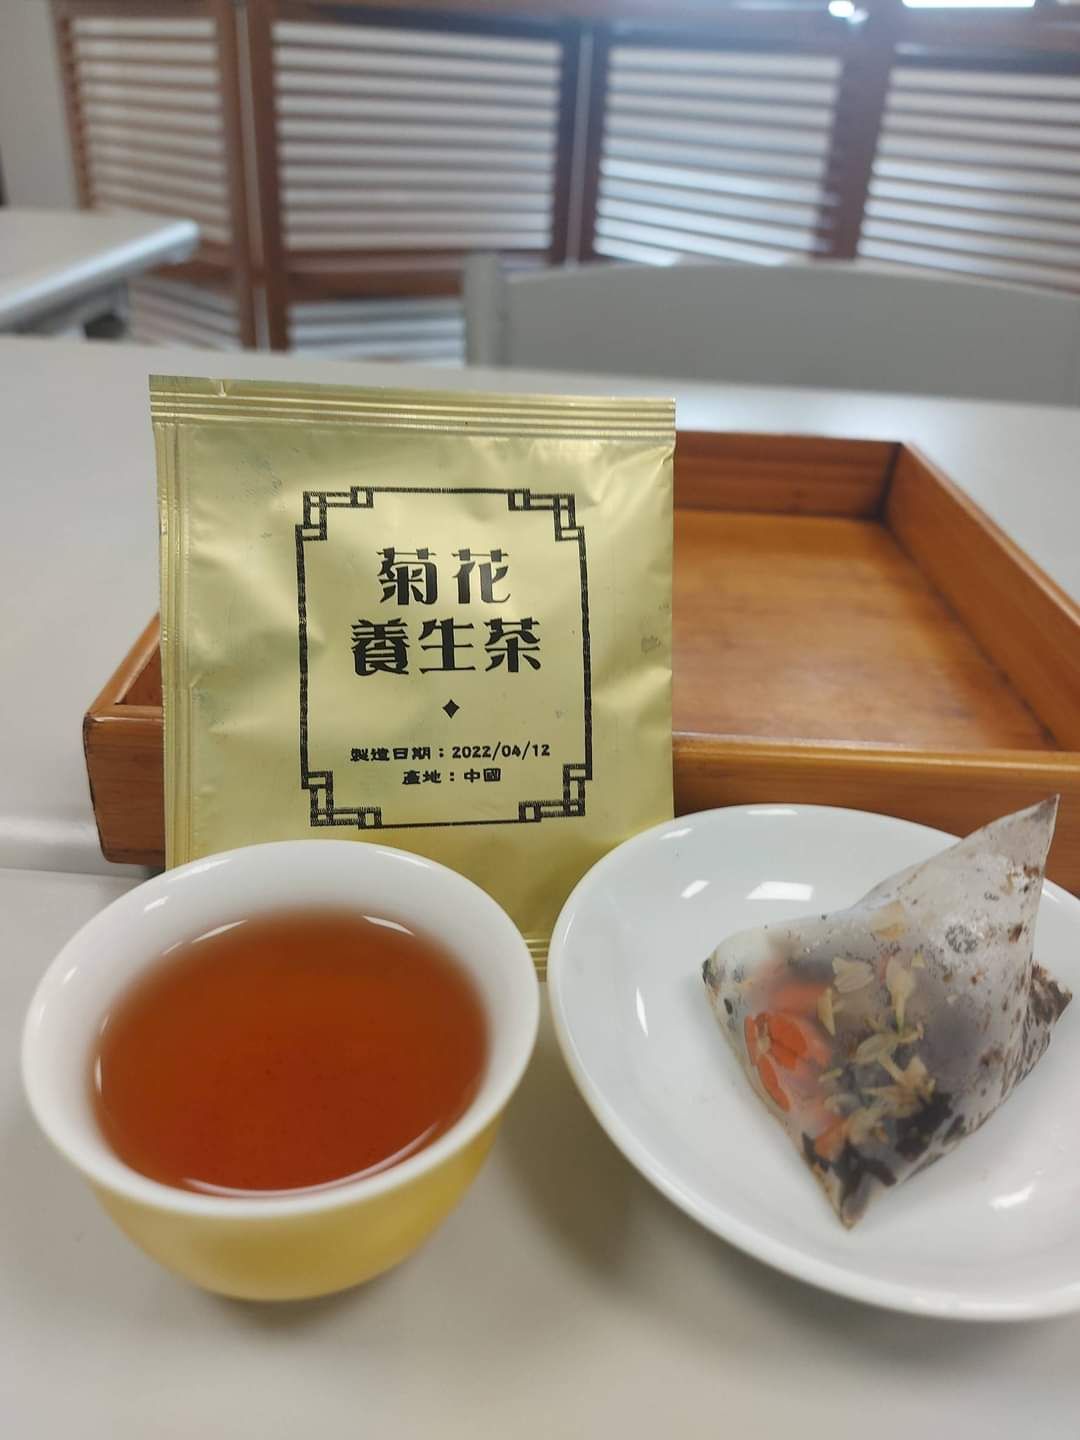 菊花養生茶